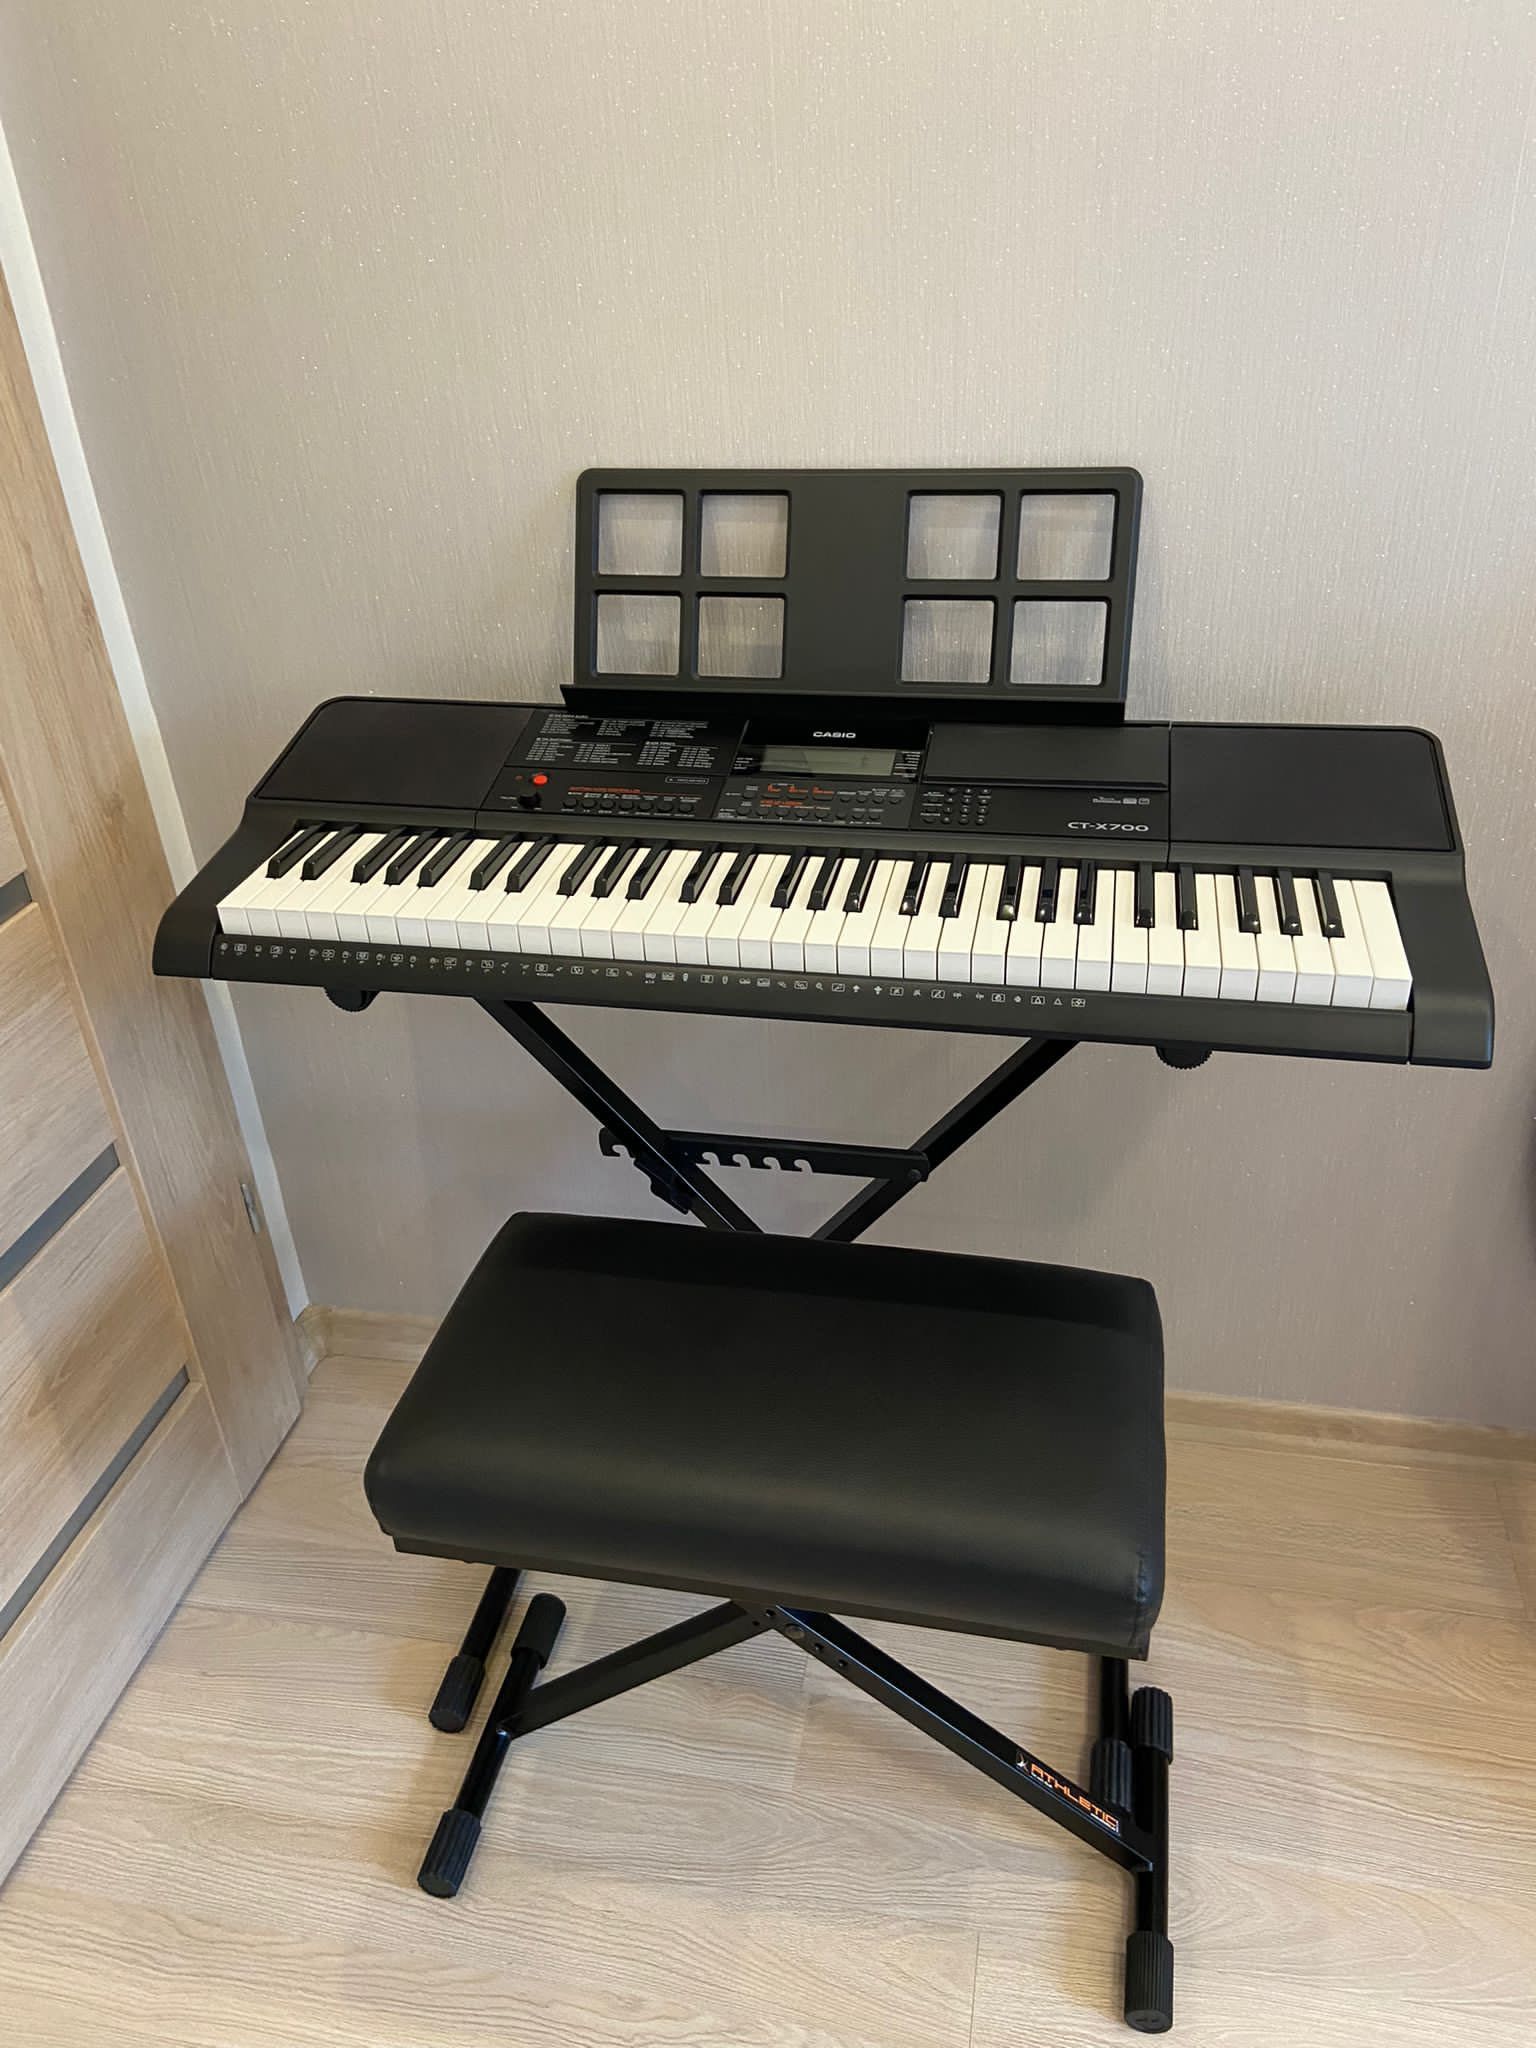 Keyboard Casio CT-X700 komplet - stan bdb!